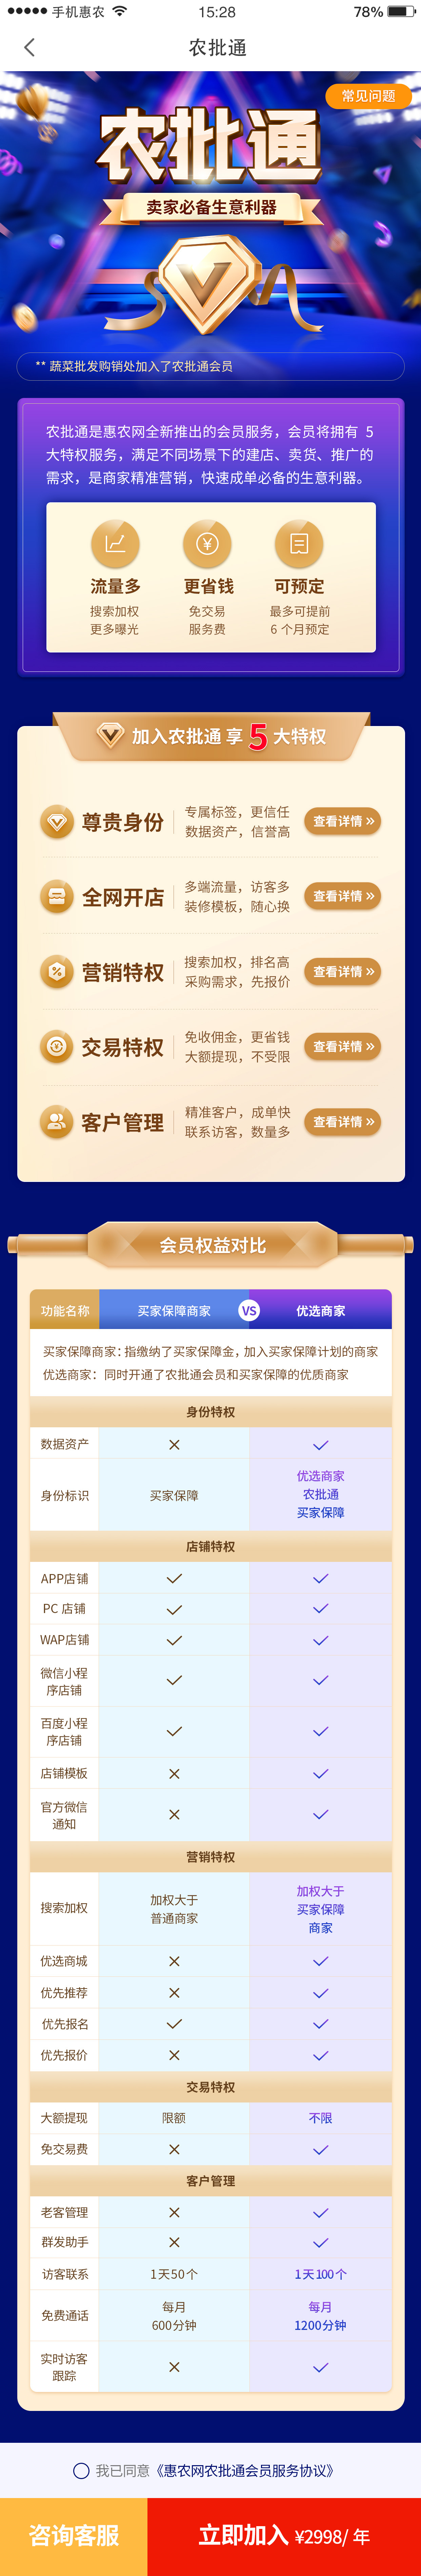 惠农网专题活动页面设计图1